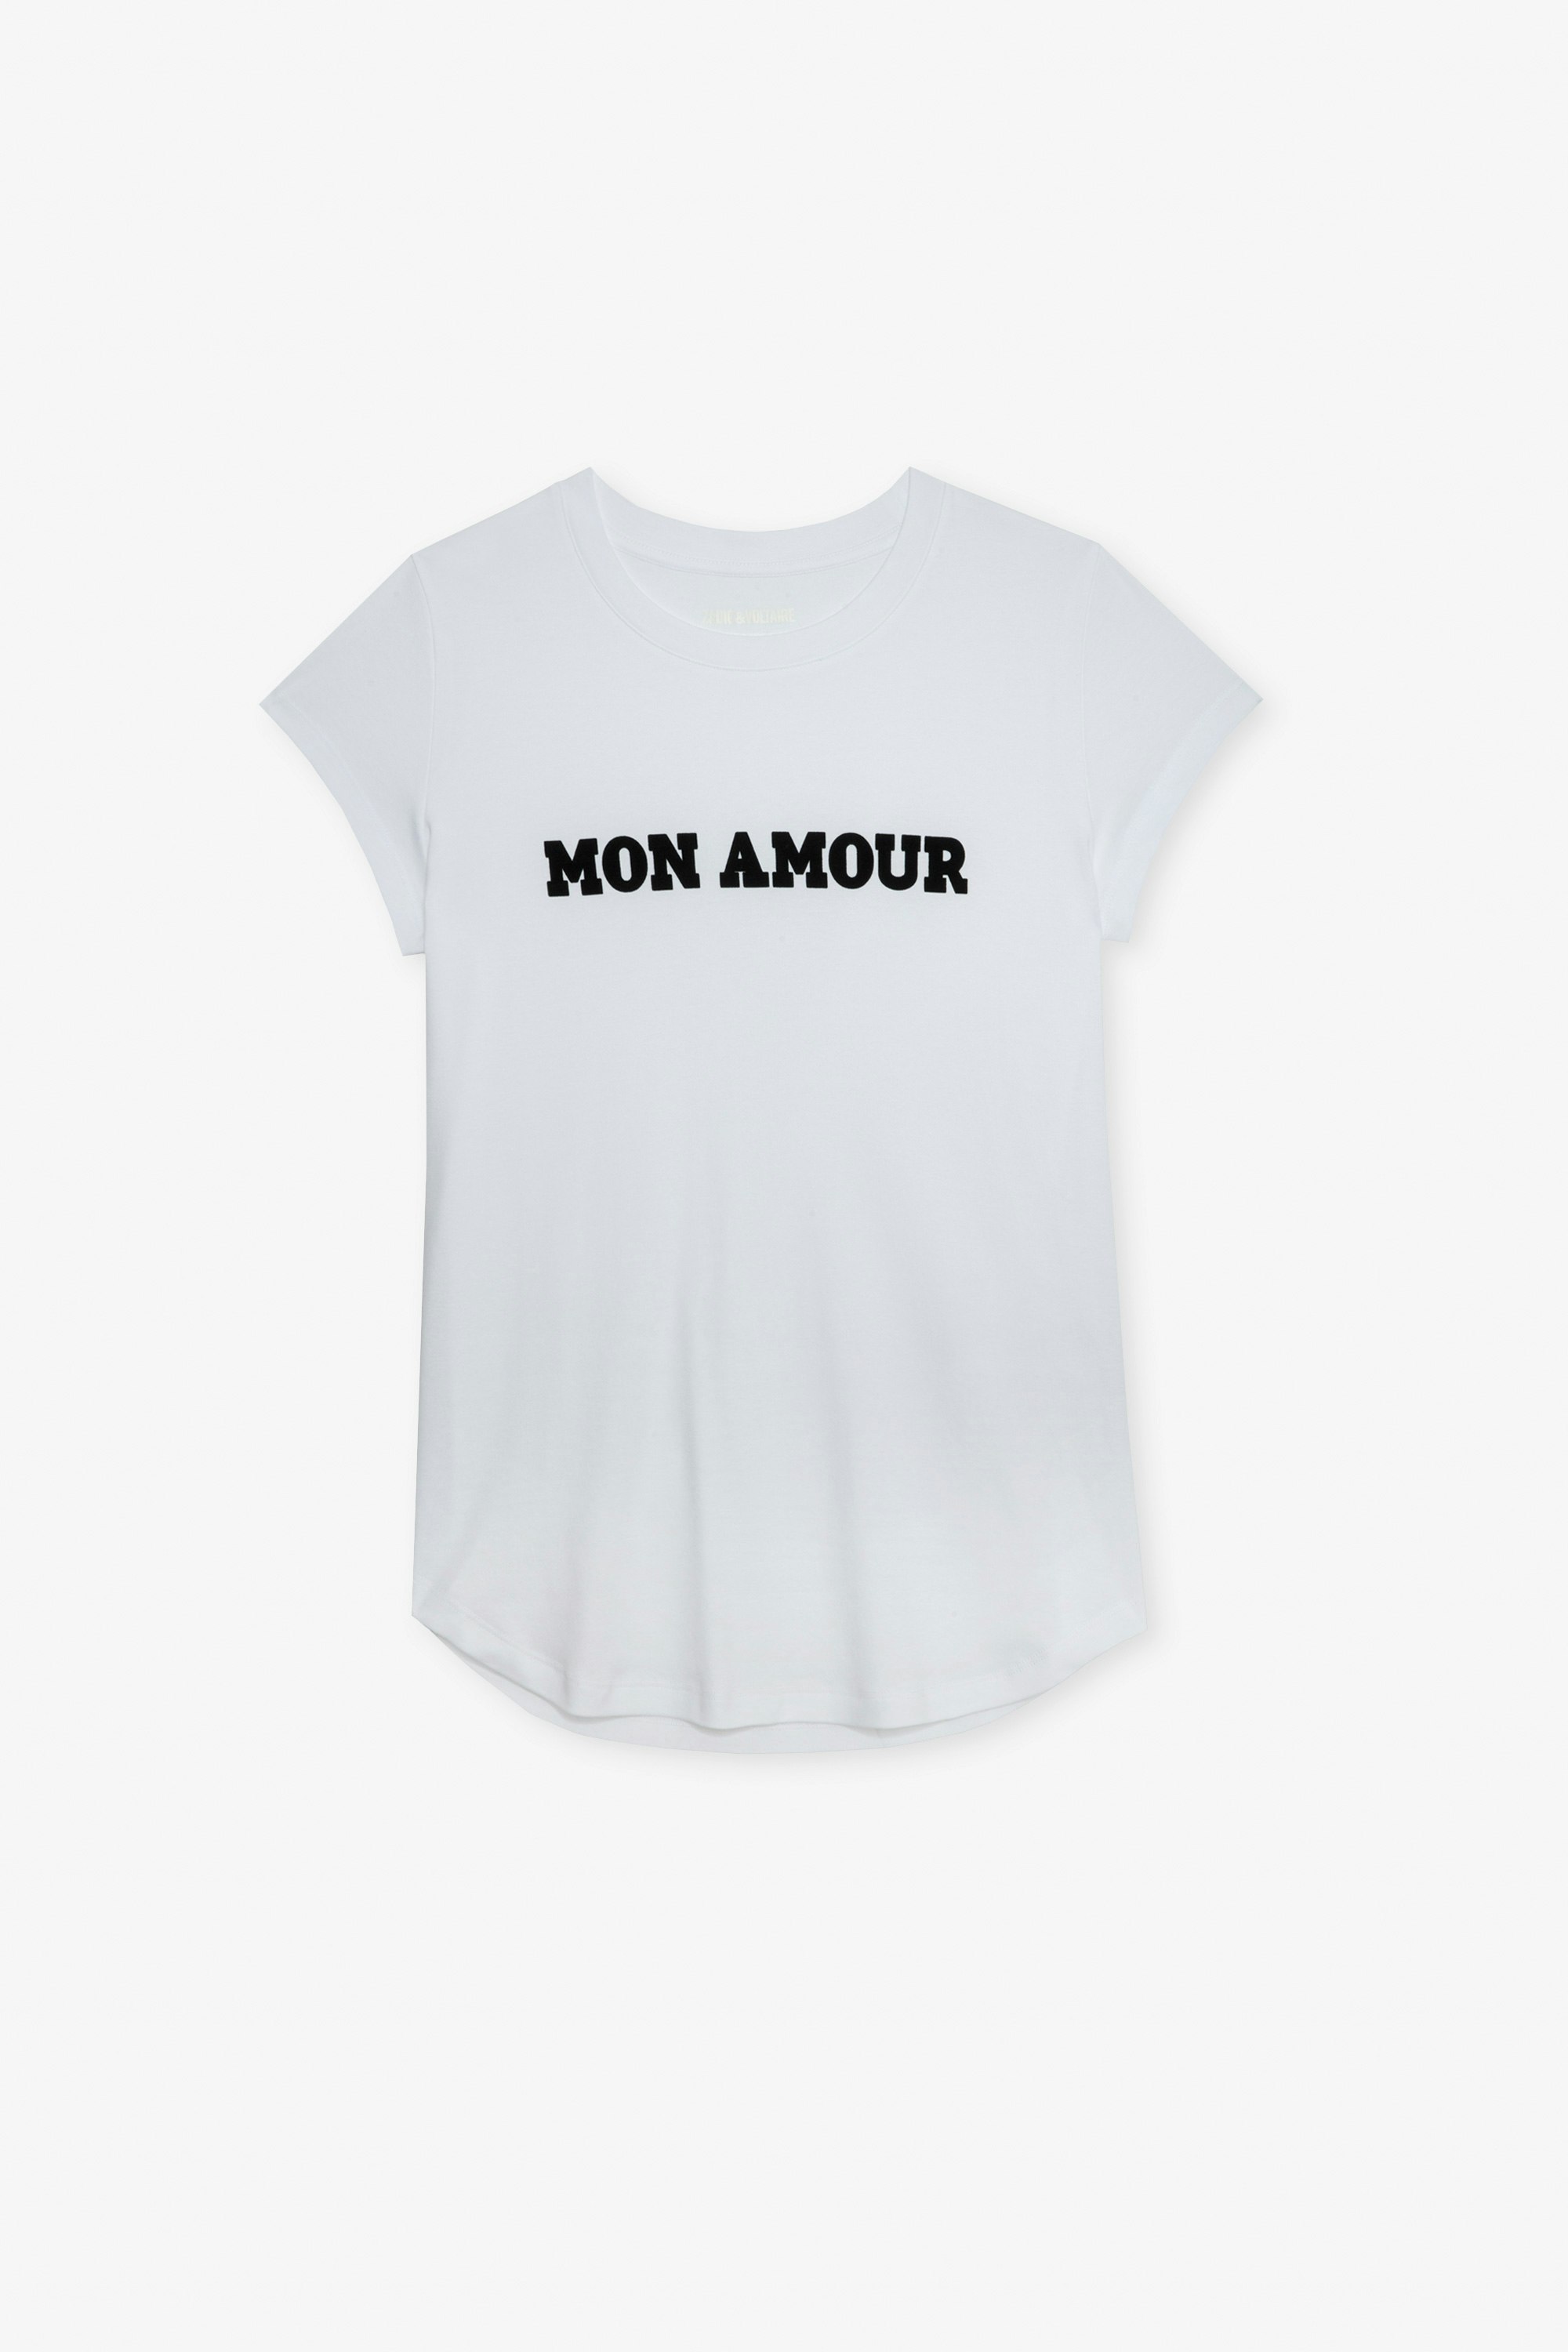 T-Shirt Woop Mon Amour Weißes Damen-T-Shirt aus Baumwolle mit „Mon amour“-Schriftzug.